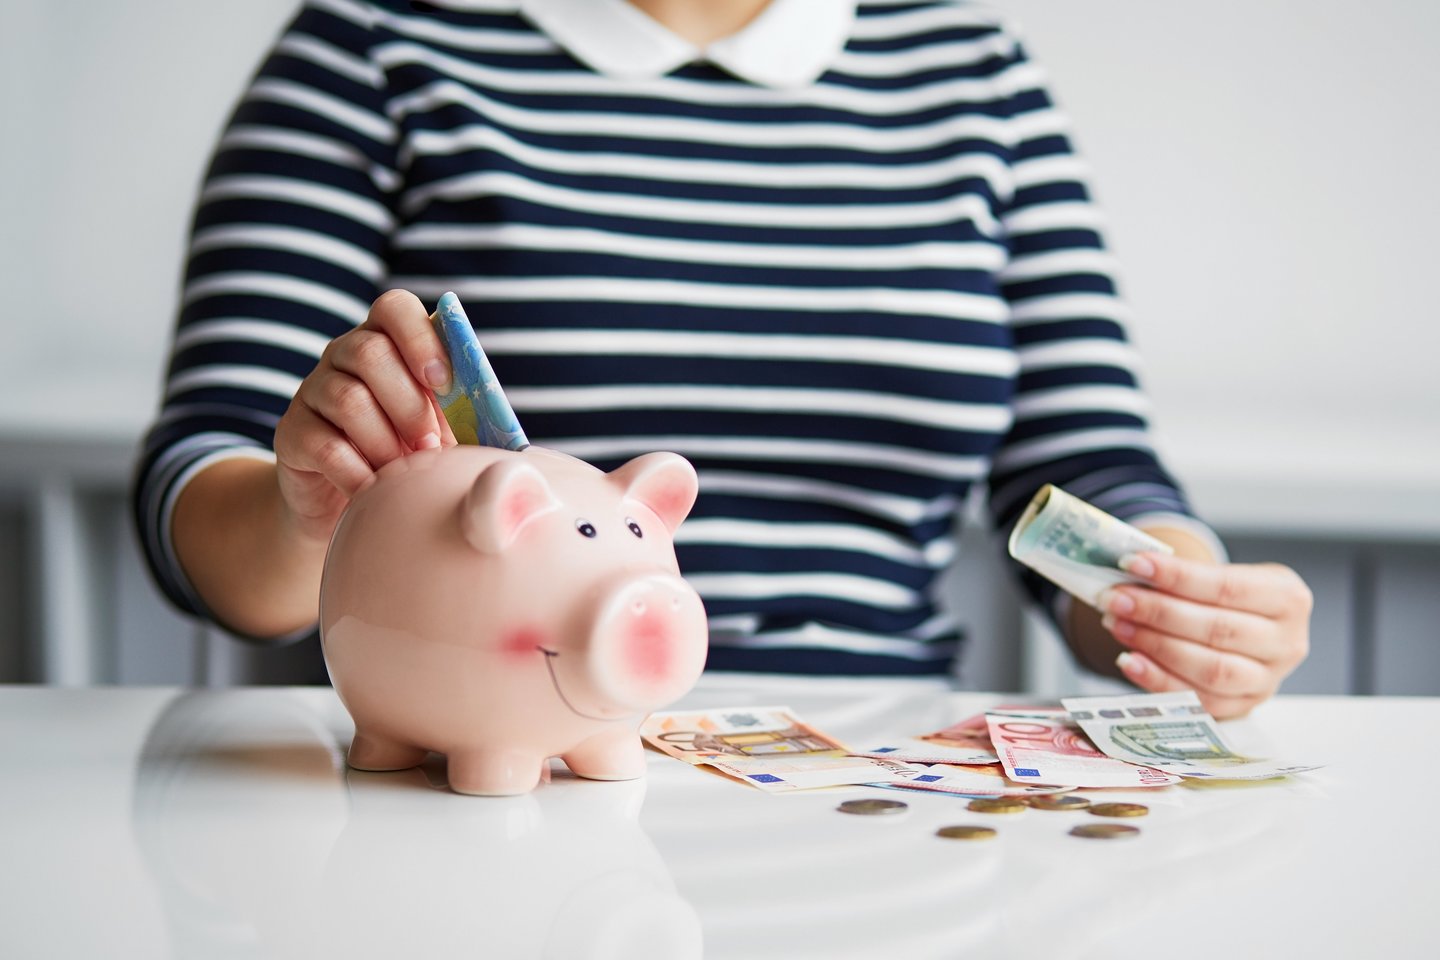 Pinigų srautų valdymas ir asmeninio biudžeto planavimas gali tapti lengvu įpročiu.<br>Shutterstock nuotr.